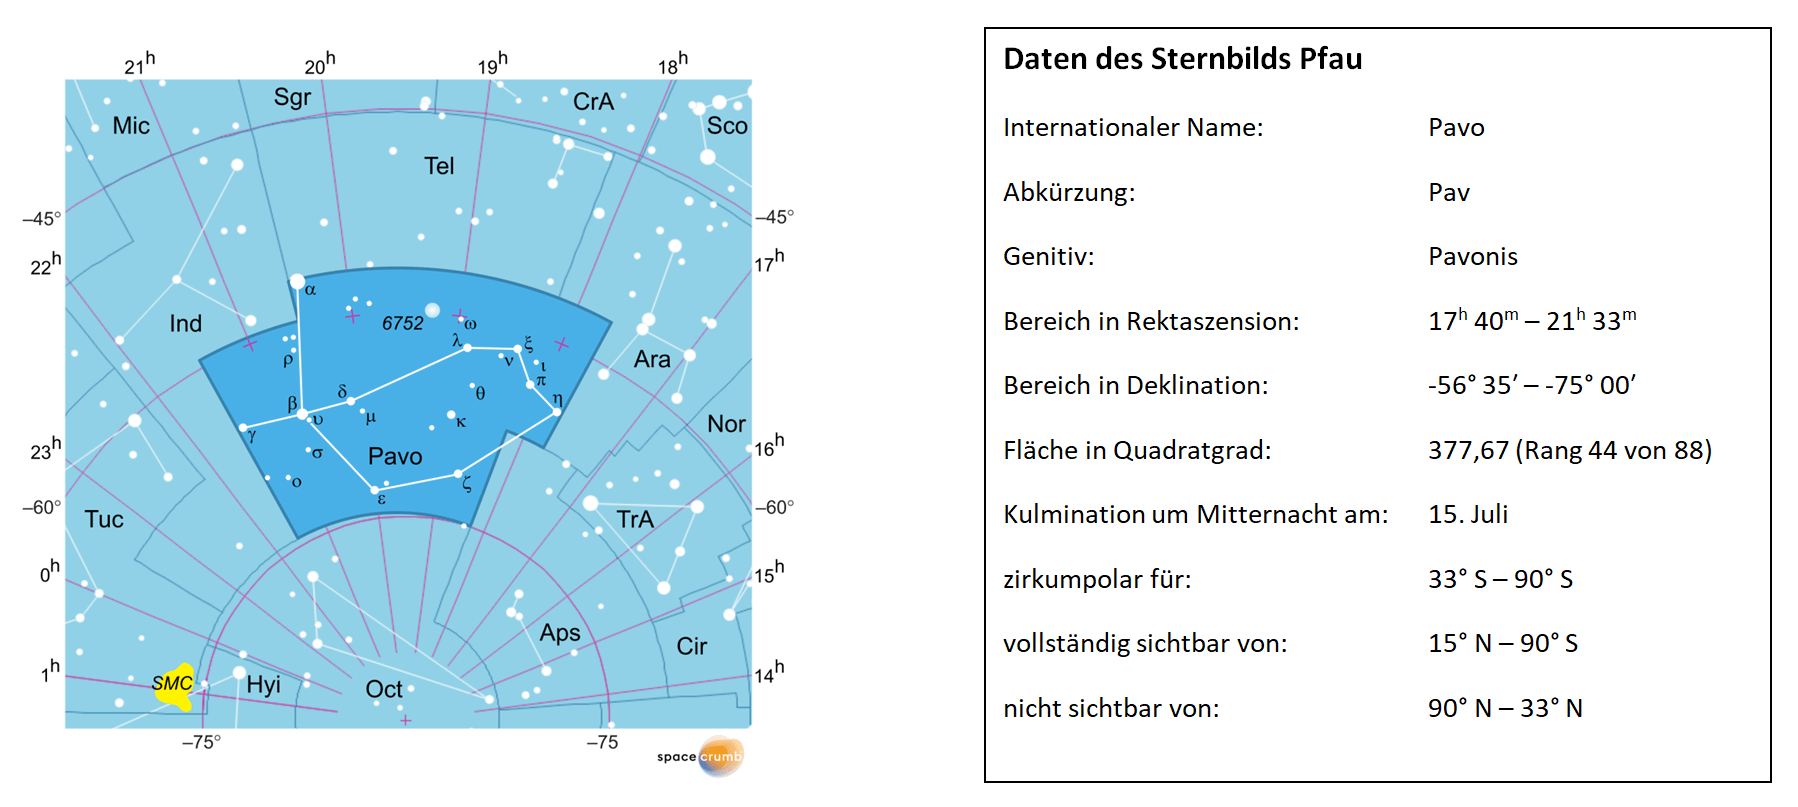 Links zeigt eine mit Koordinaten versehene Karte eines Himmelsausschnitts weiße Sterne auf hellblauem Hintergrund. Die Fläche, die das Sternbild Pfau einnimmt, ist dunkelblau hervorgehoben. Eine Tabelle rechts gibt wichtige Daten des Sternbilds an.